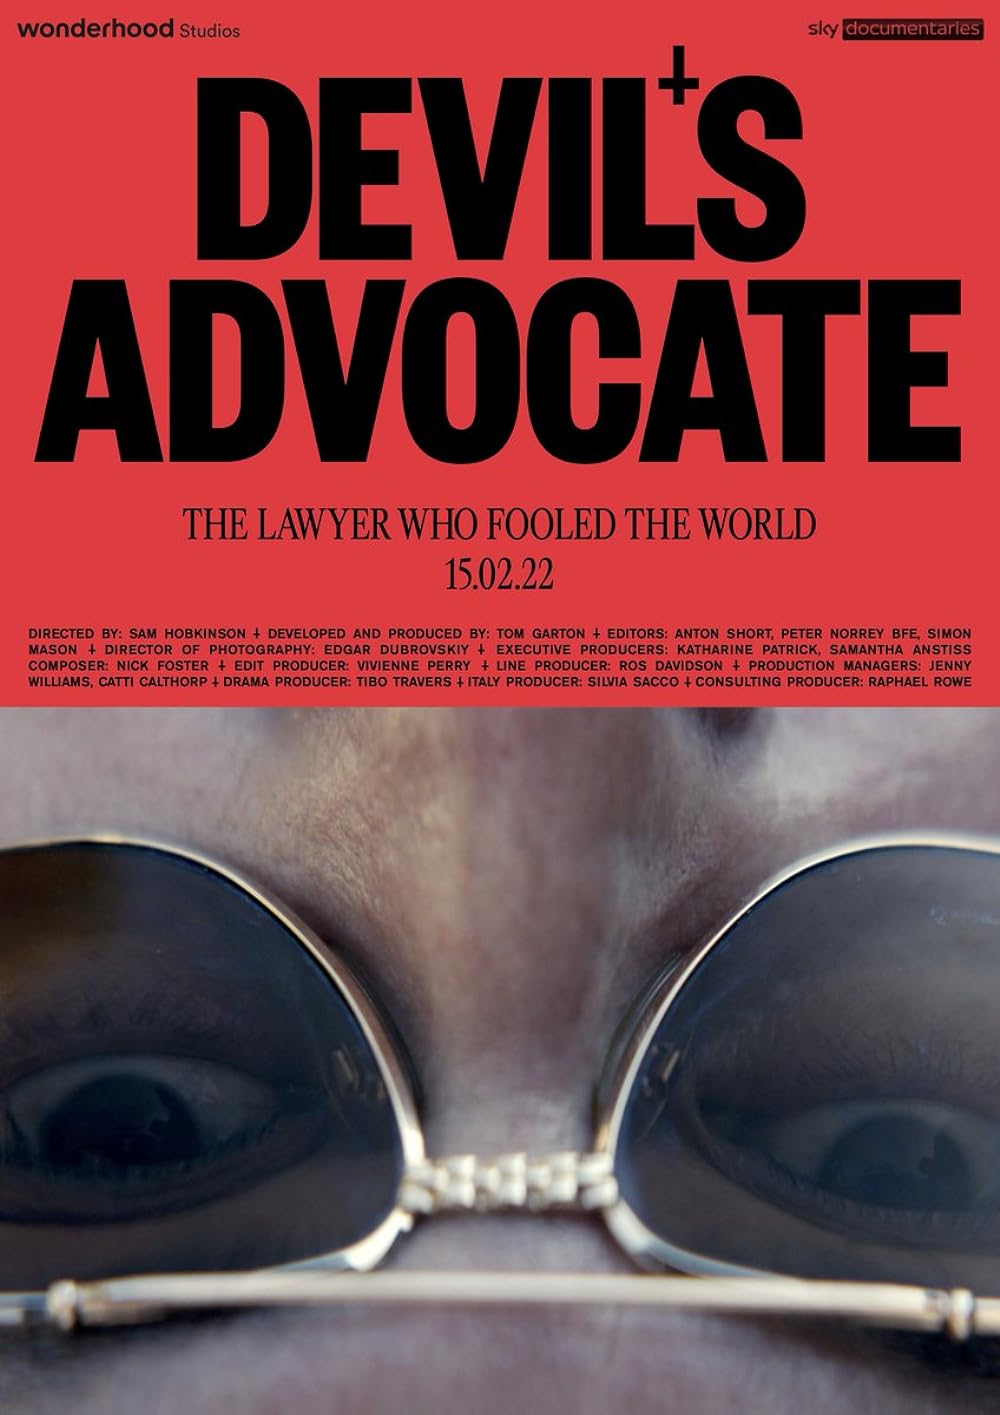 Devil's Advocate: The Mostly True Story of Giovanni Di Stefano